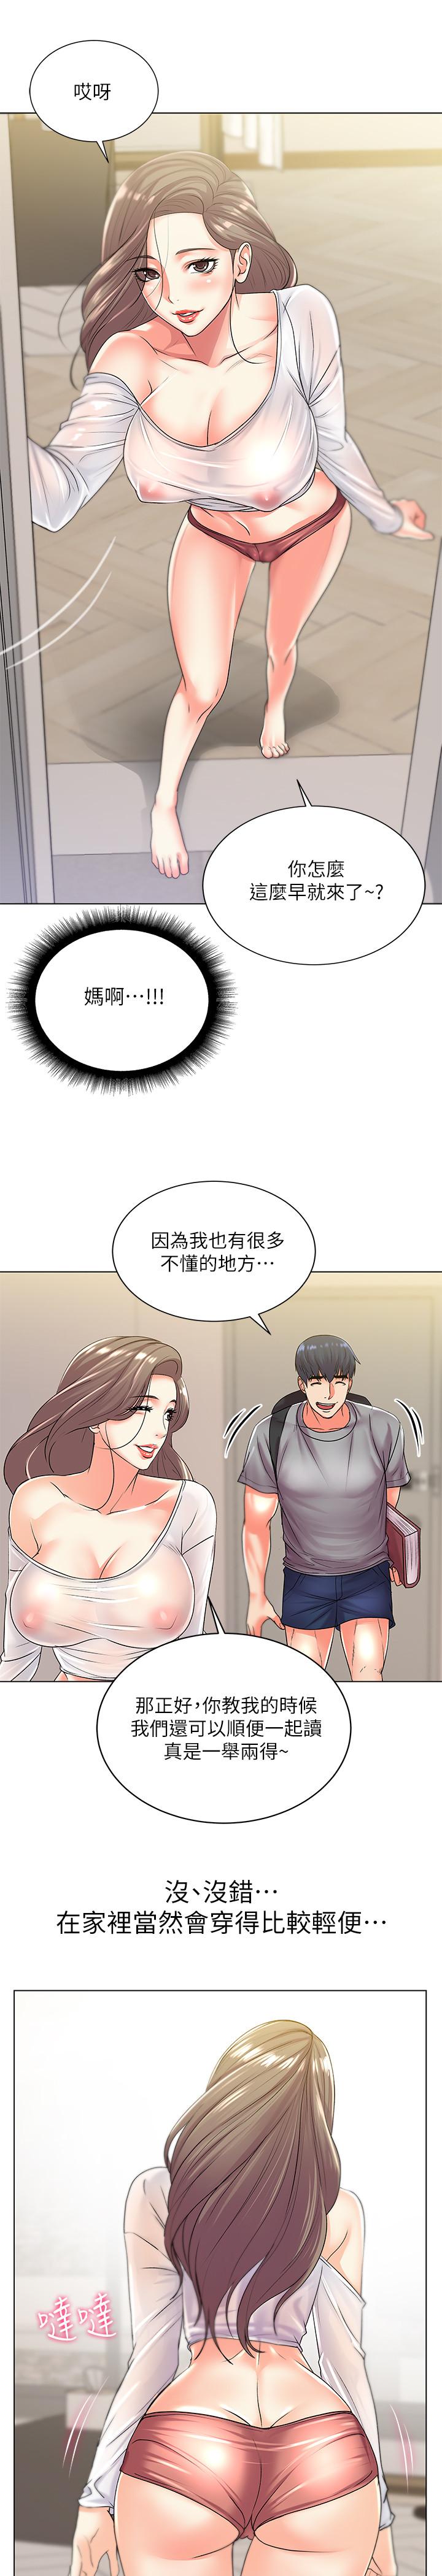 韩国污漫画 超市的漂亮姐姐 第17话-智妍难以抵挡的磨蹭 15